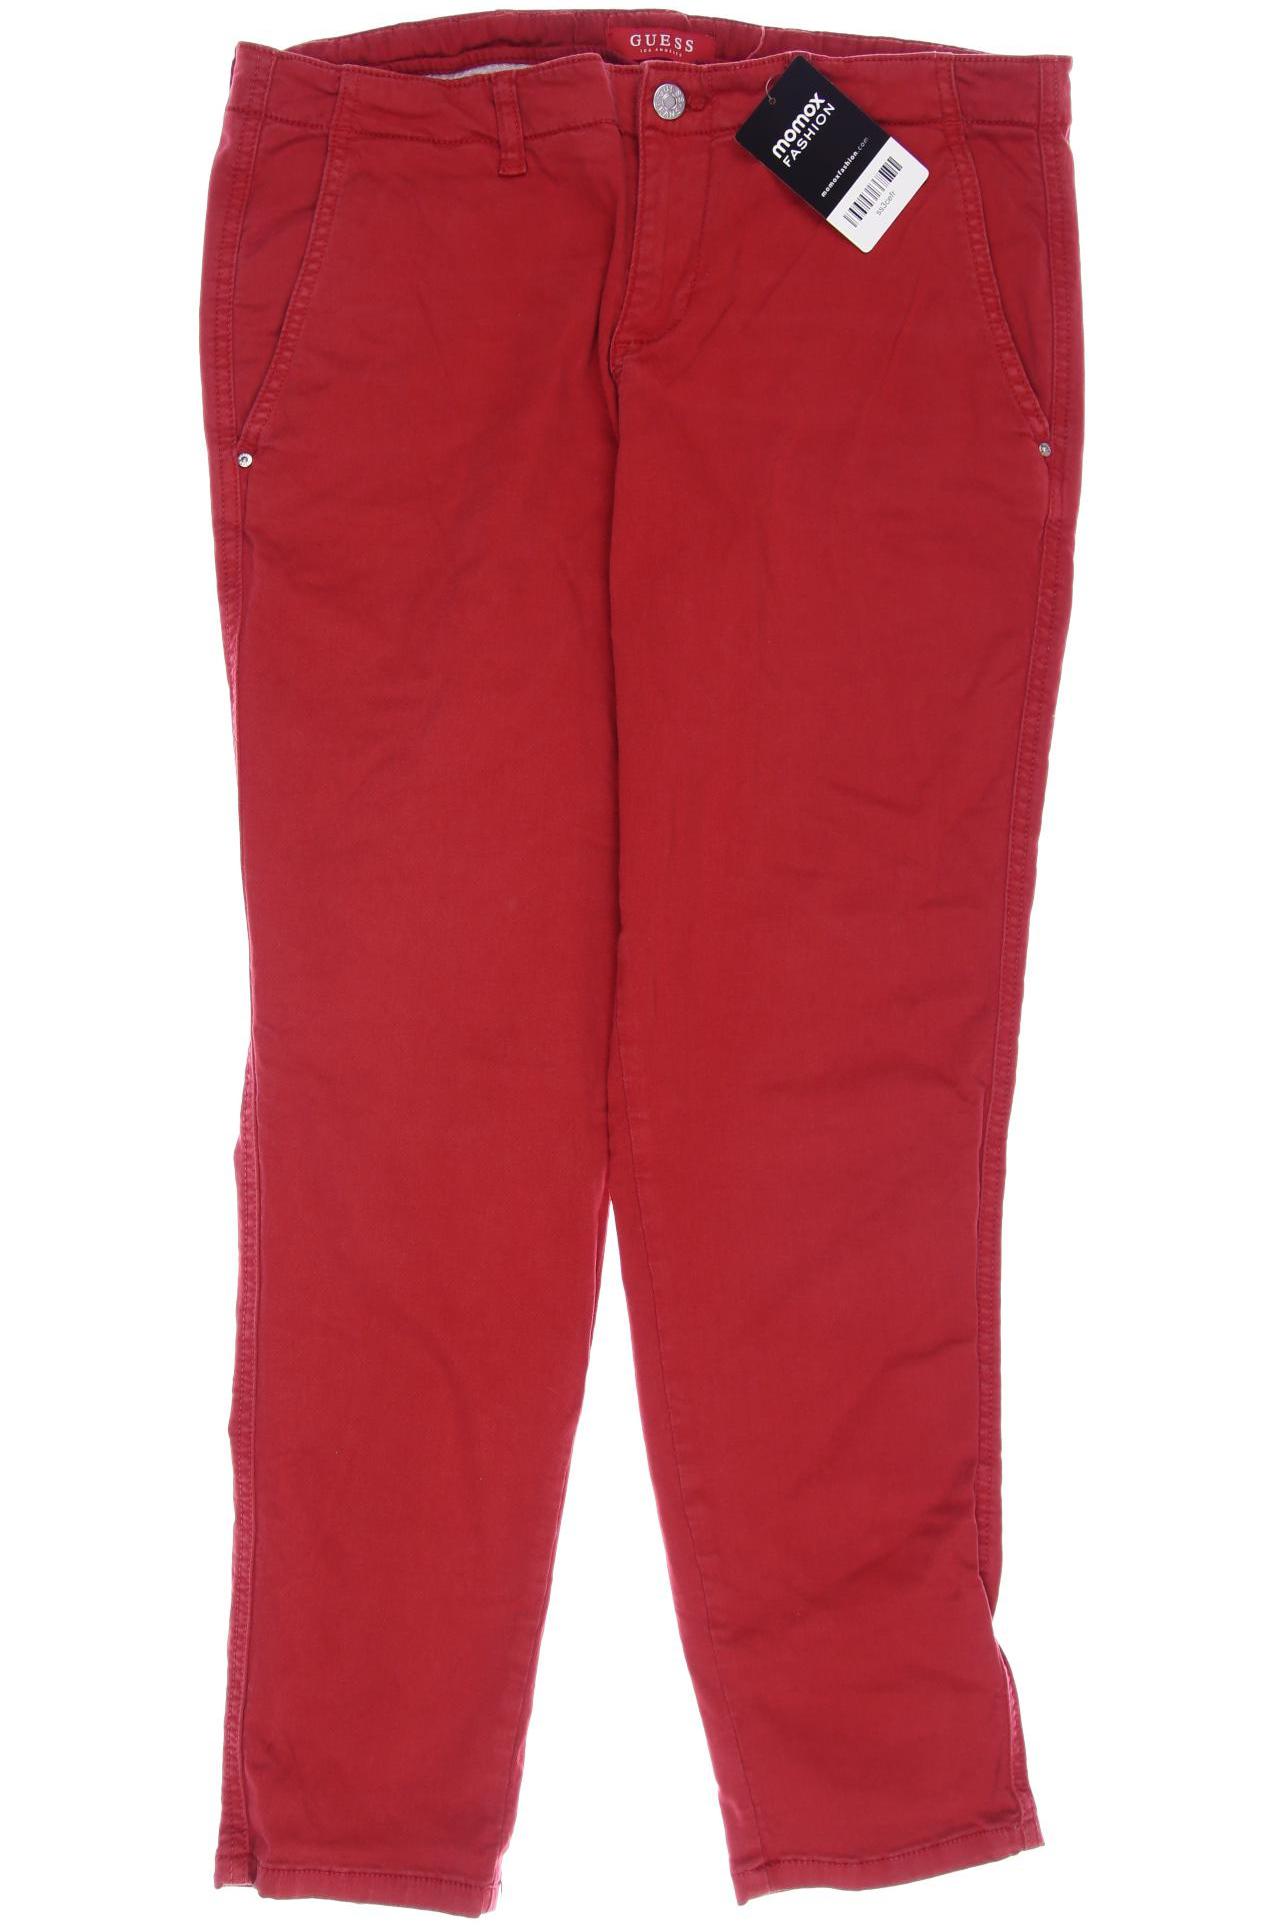 Guess Damen Jeans, rot, Gr. 40 von Guess